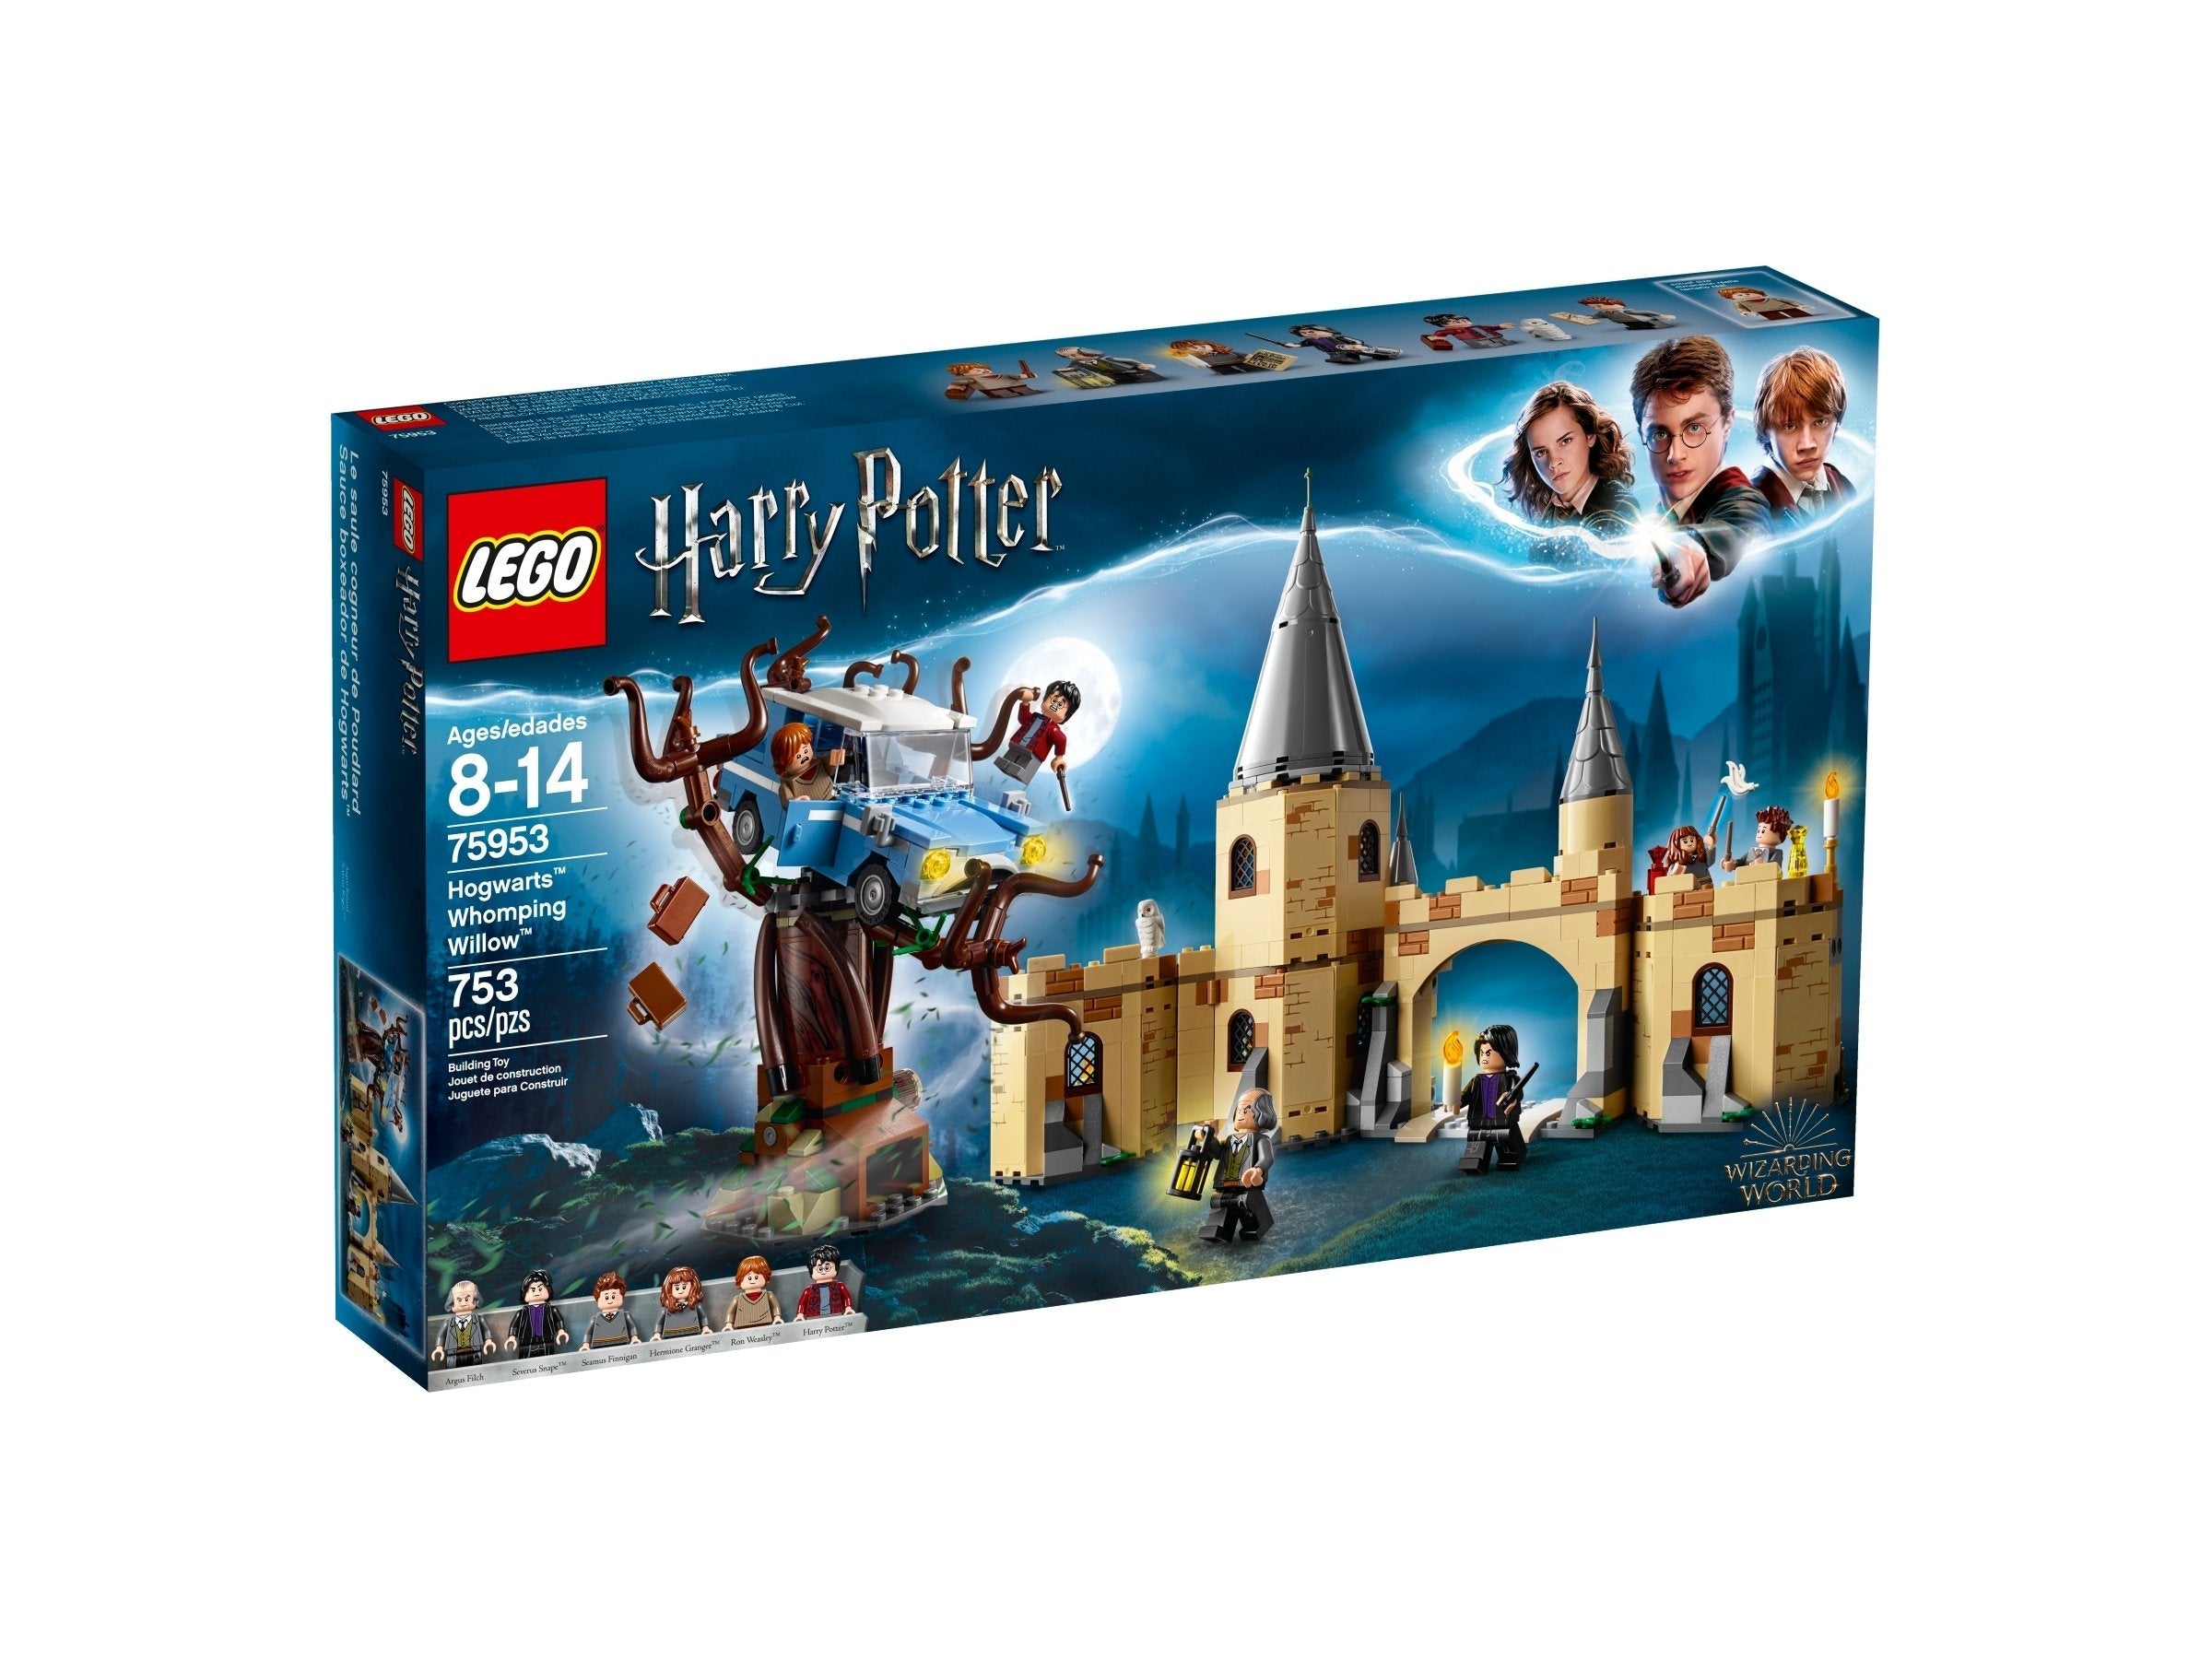 LEGO Harry Potter Die Peitschende Weide von Hogwarts (75953) - im GOLDSTIEN.SHOP verfügbar mit Gratisversand ab Schweizer Lager! (5702016110364)